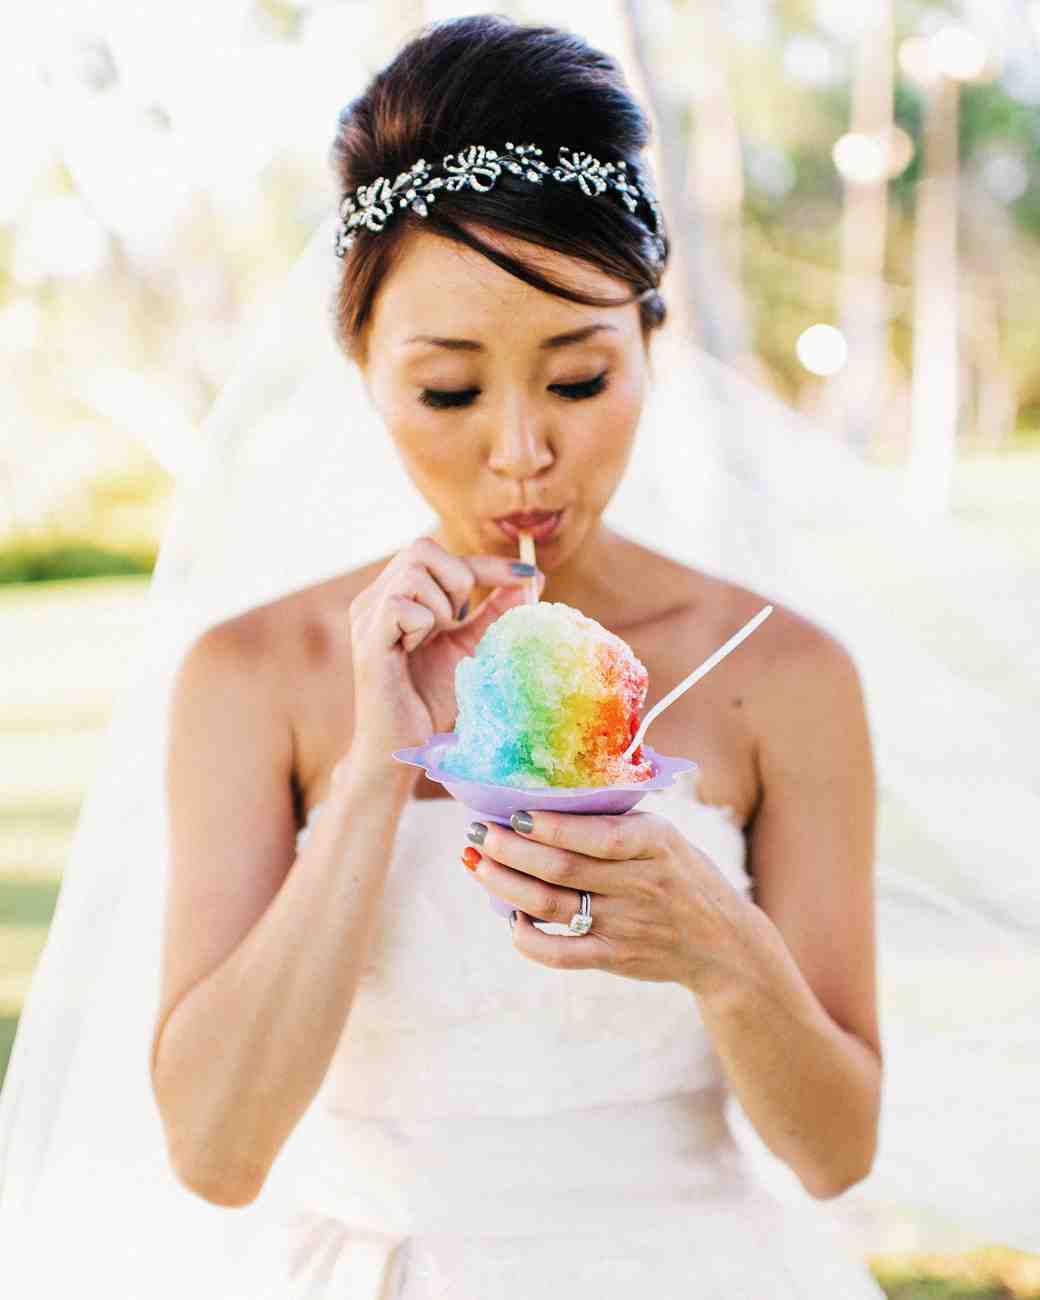 bride with snow cone